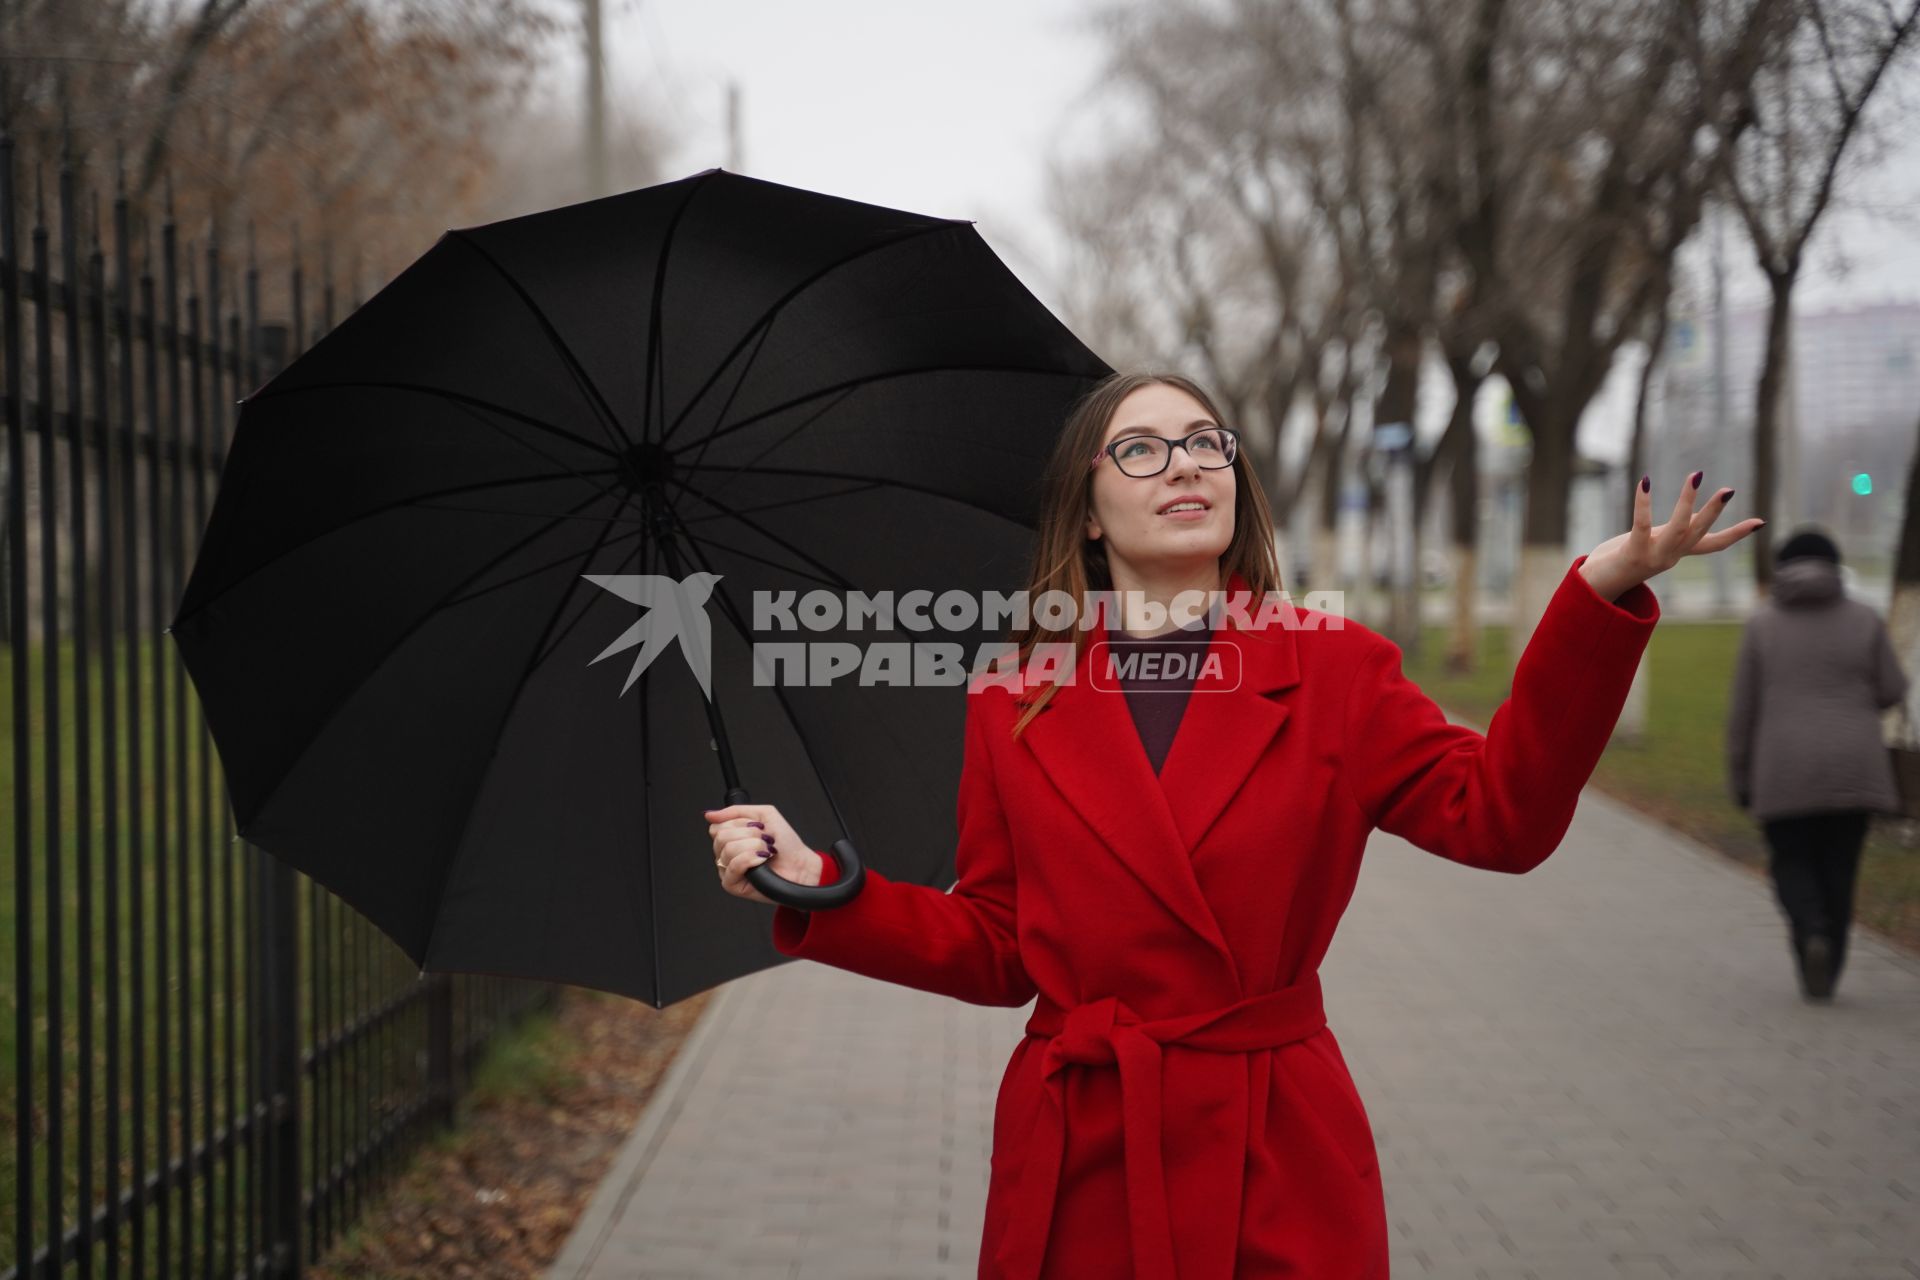 Самара. Девушка на улице под зонтом.